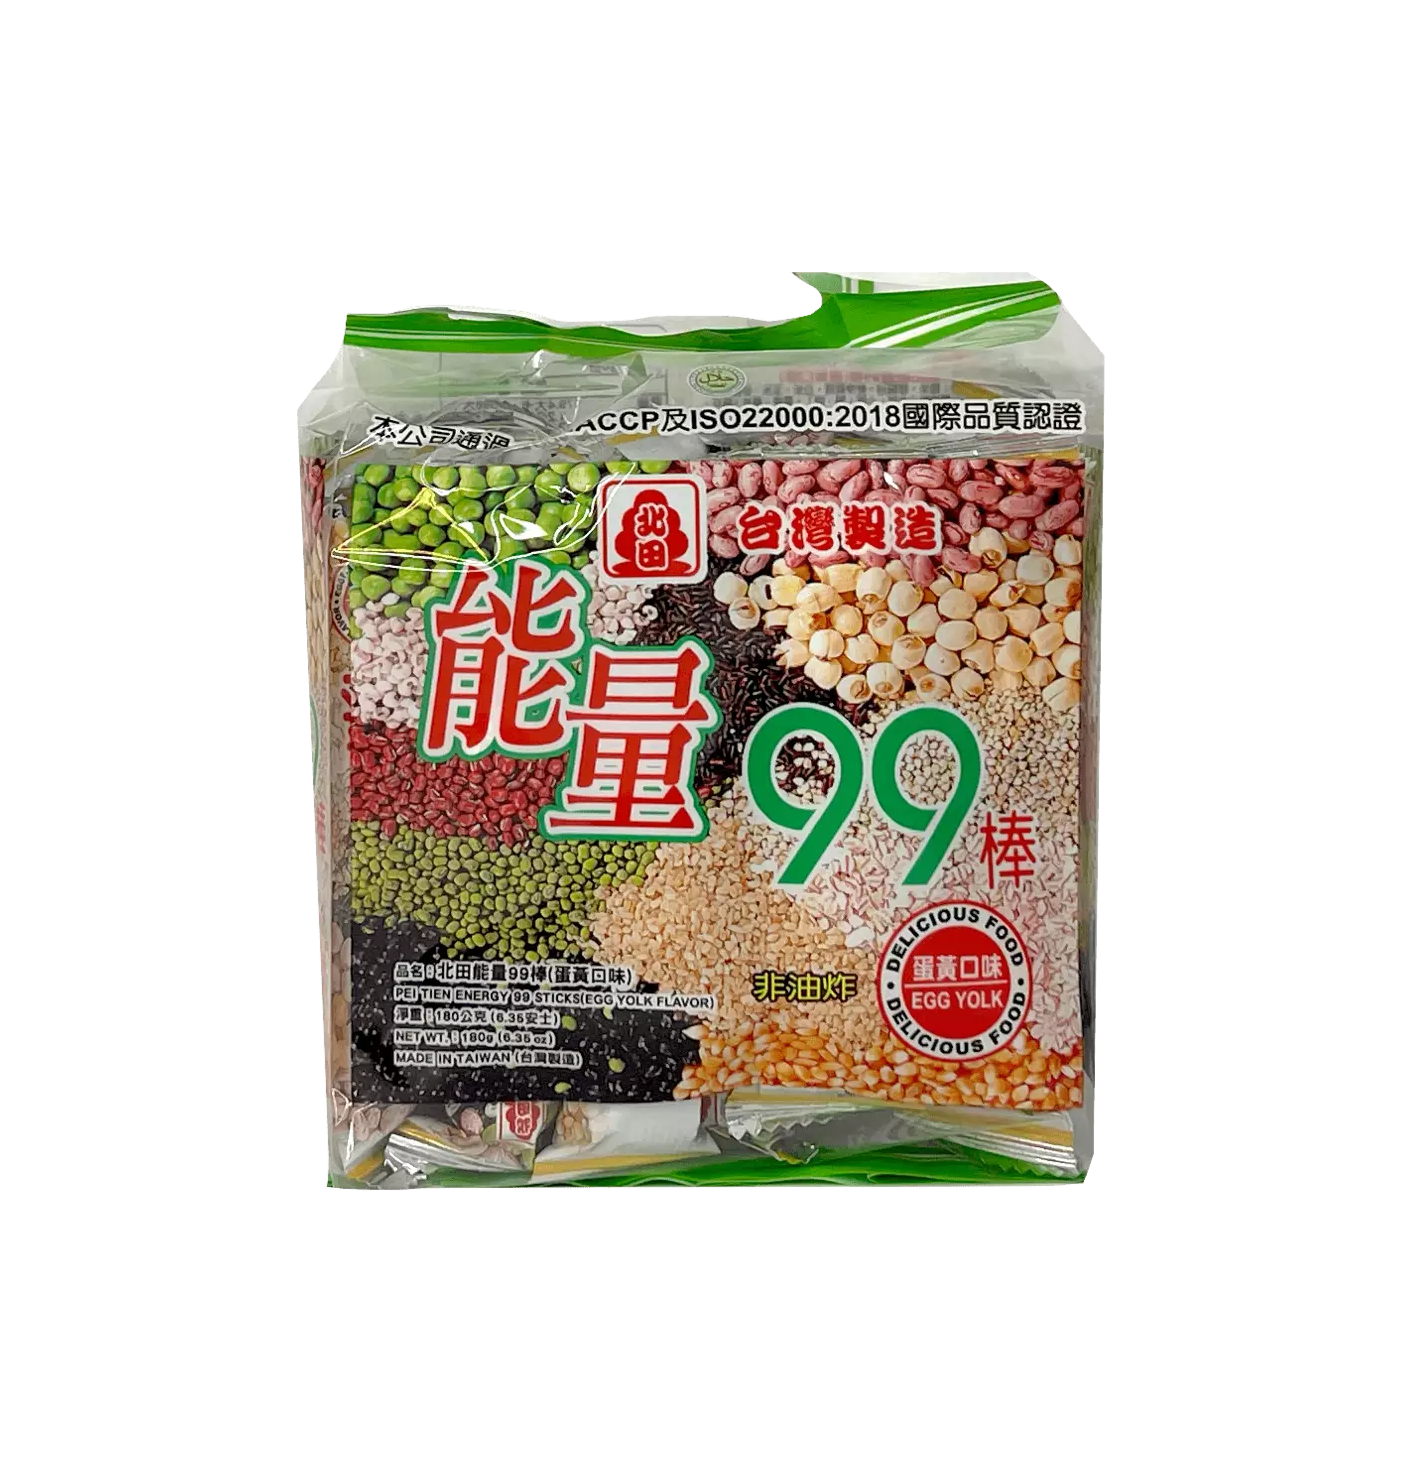 Energi 99 Puffad Risstav Med Äggula Smak 180g Peitien Taiwan   Kina